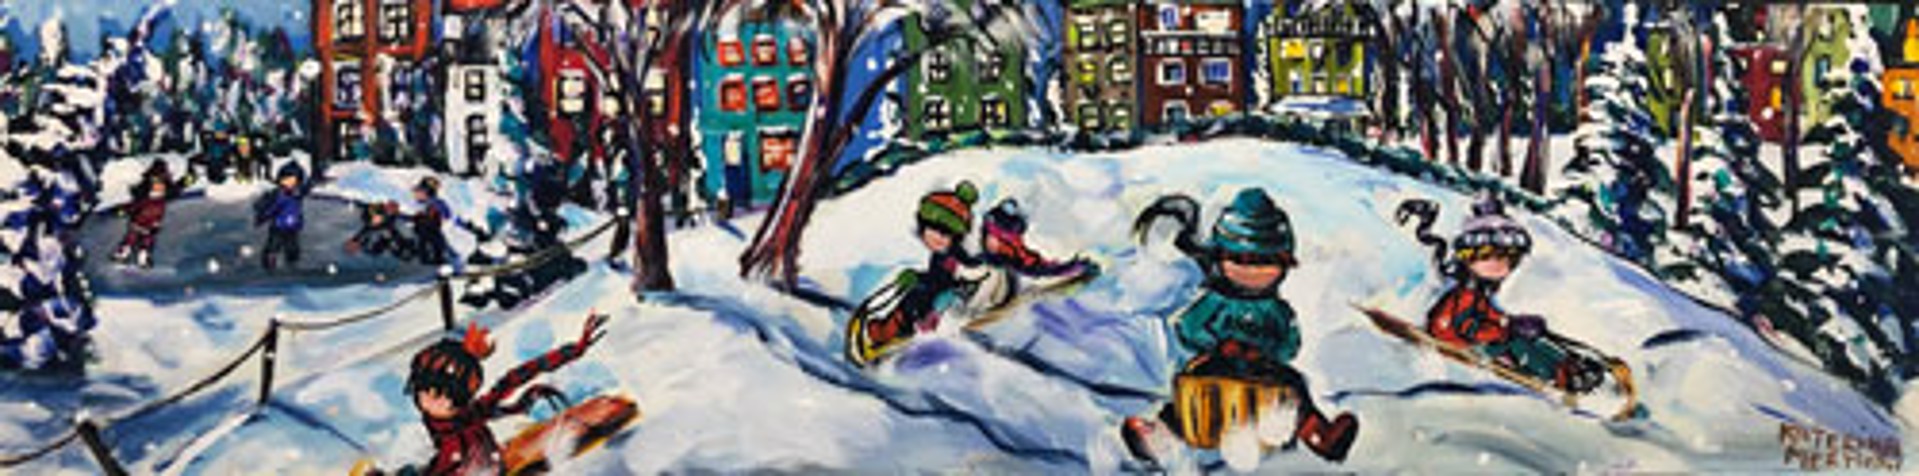 Snow Play Unframed (Frame $375) by Katerina Mertikas